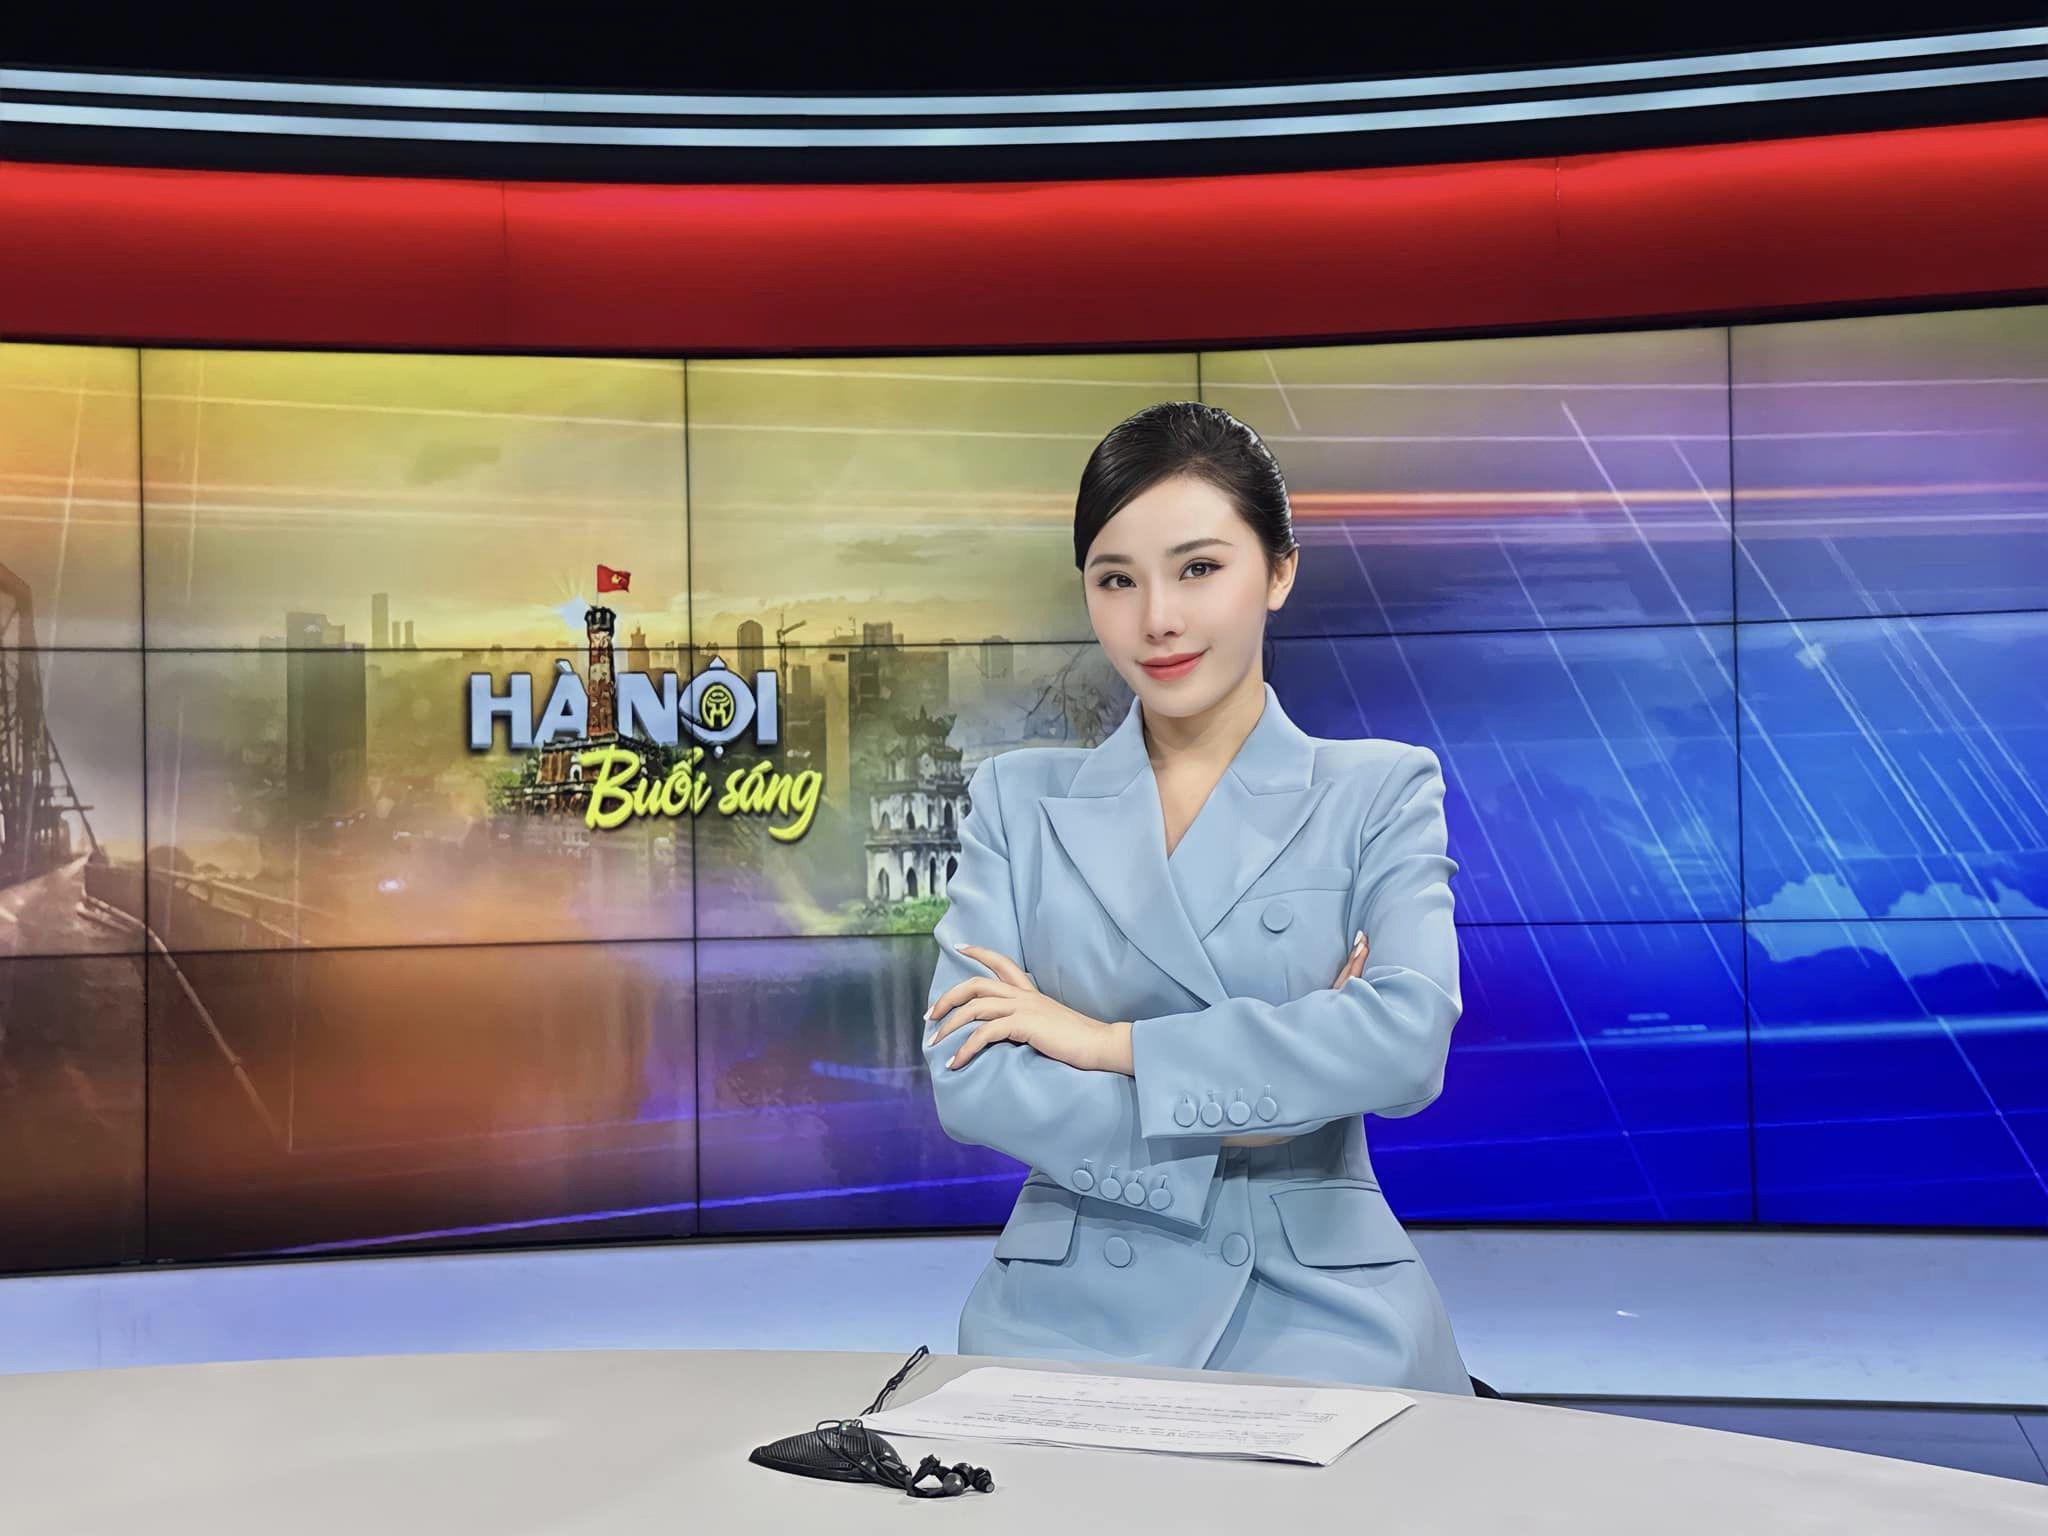 Sau khi trở thành MC của Đài truyền hình Hà Nội, Minh Anh có sự thay đổi trong phong cách ăn mặc khi dẫn sóng. Ngoài áo dài, cô còn thường xuyên diện trang phục công sở như áo blazer, chân váy bút chì tông màu nhã nhặn.